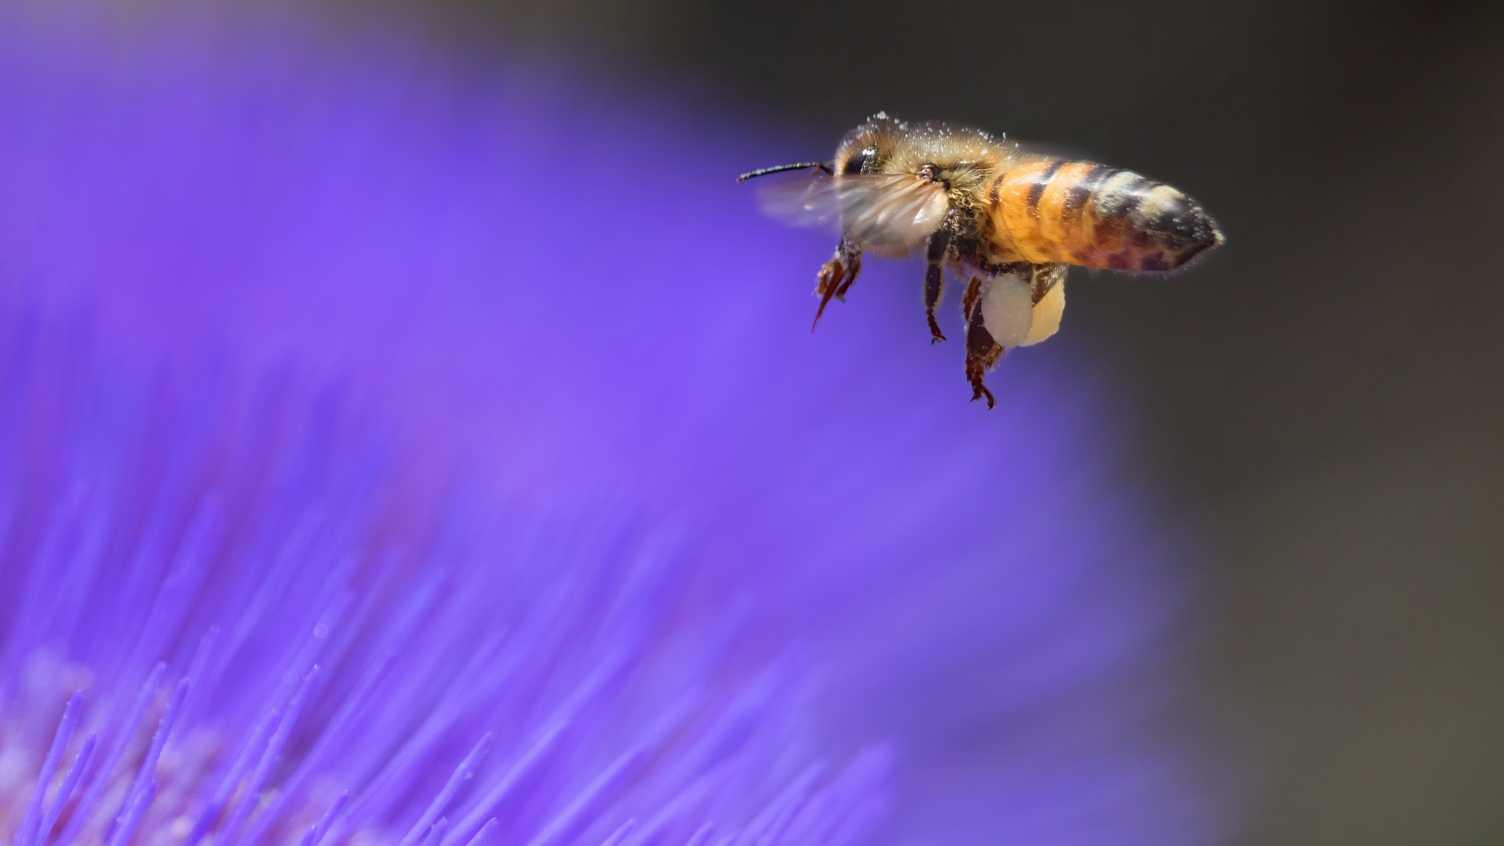 Пчелы оценили количество объектов при помощи нечисловых параметров